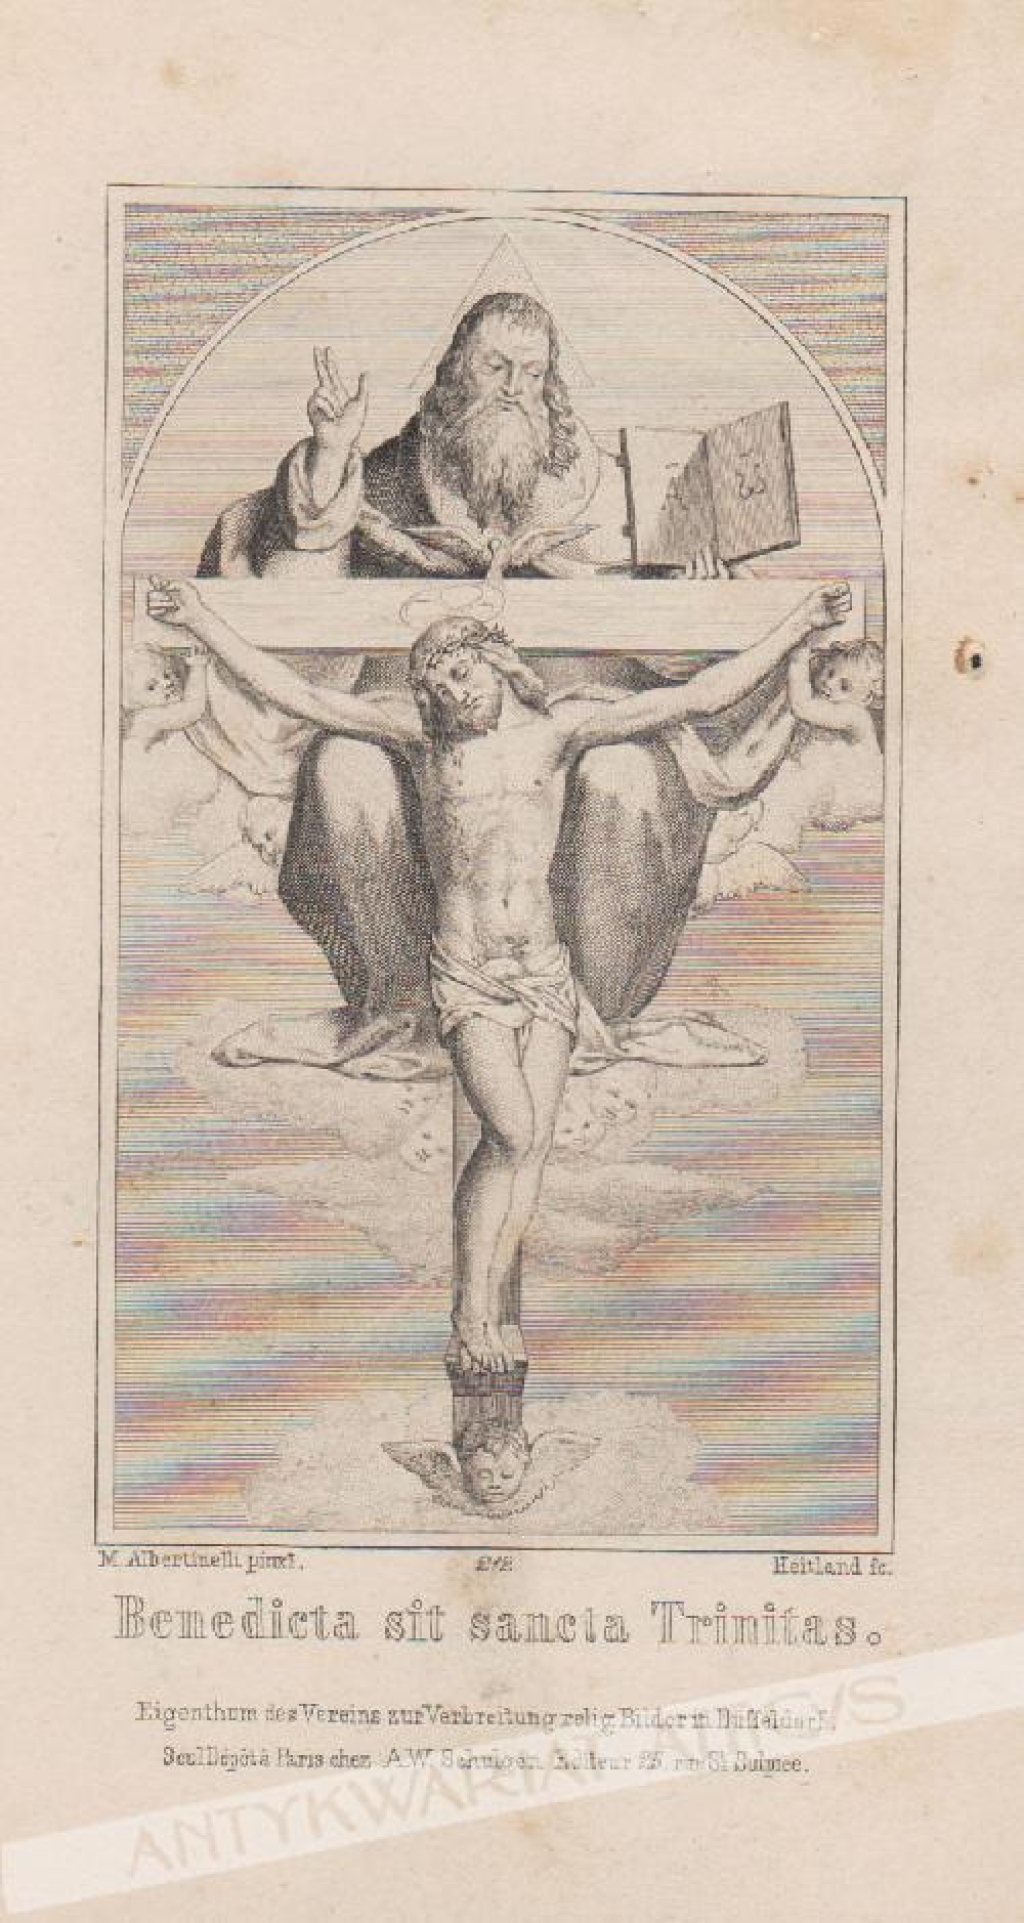 [rycina, 1864] Benedicta sit sancta Trinitas  [Błogosławiona niech będzie Trójca Przenajświętsza]